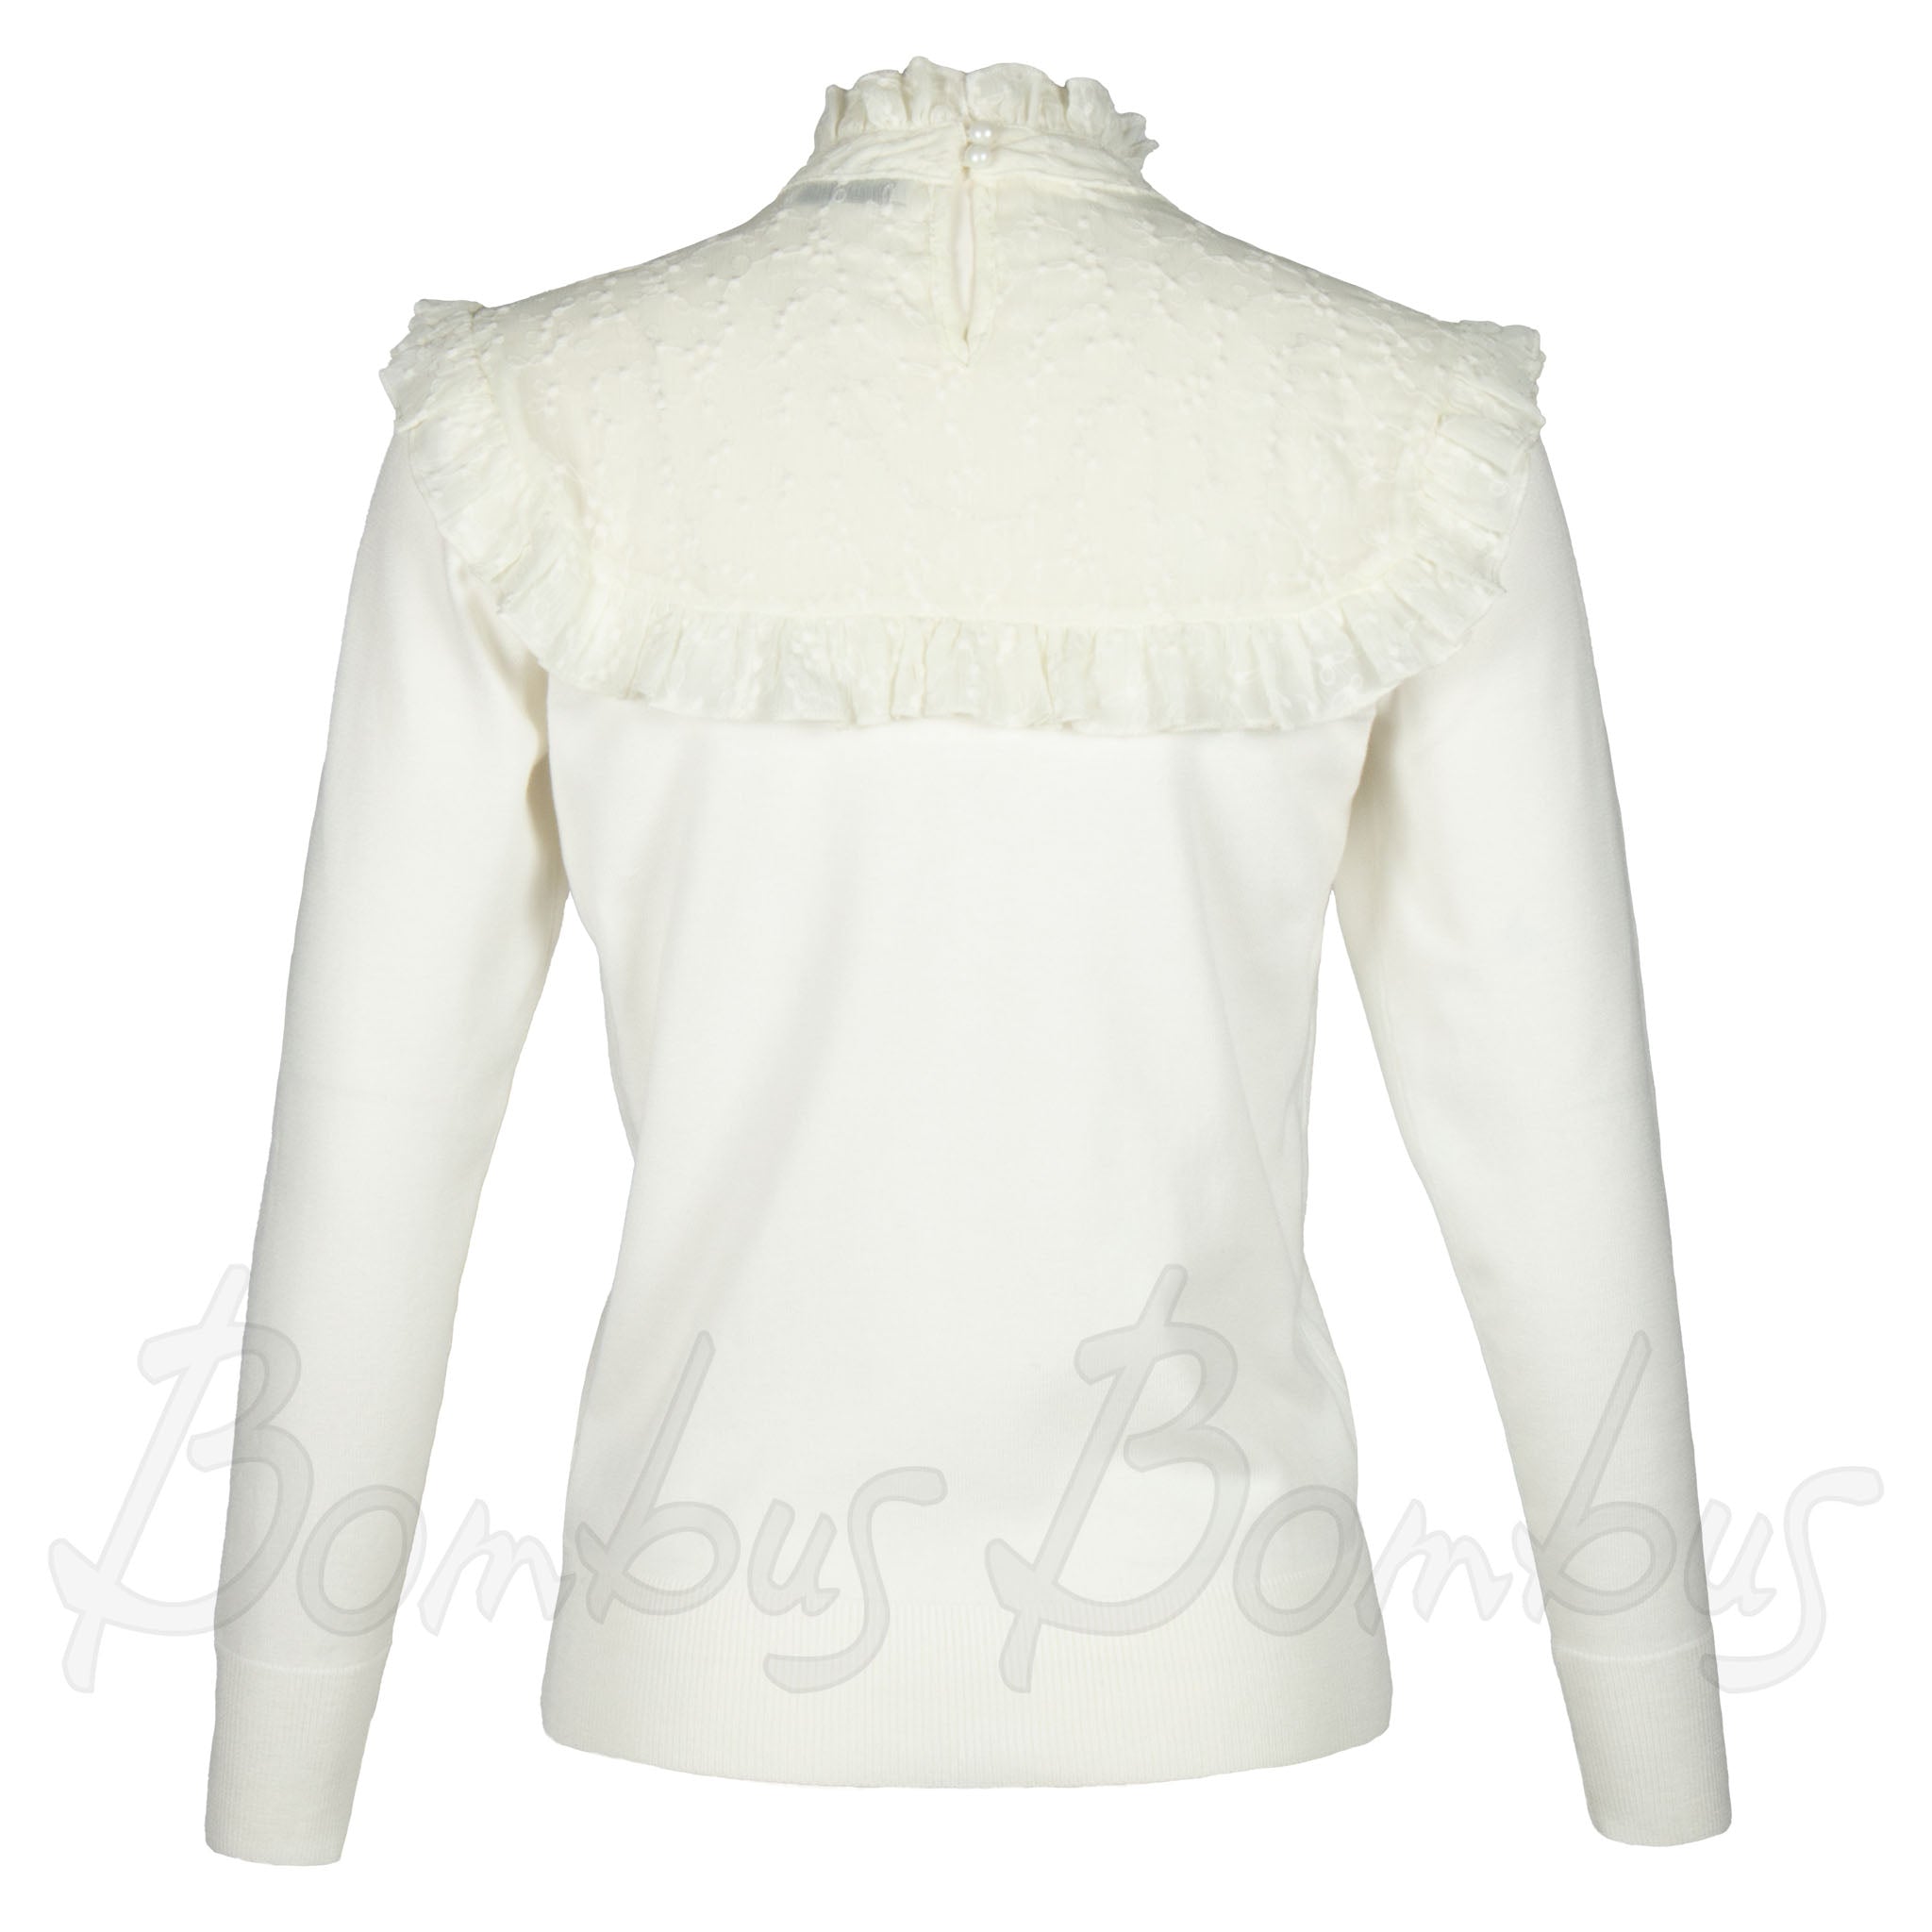 Michan luonnonvalkoinen neulepusero. Yläosassa läpikuultavaa kangasta, röyhelöä ja kauluksessa napit. Takakuva.